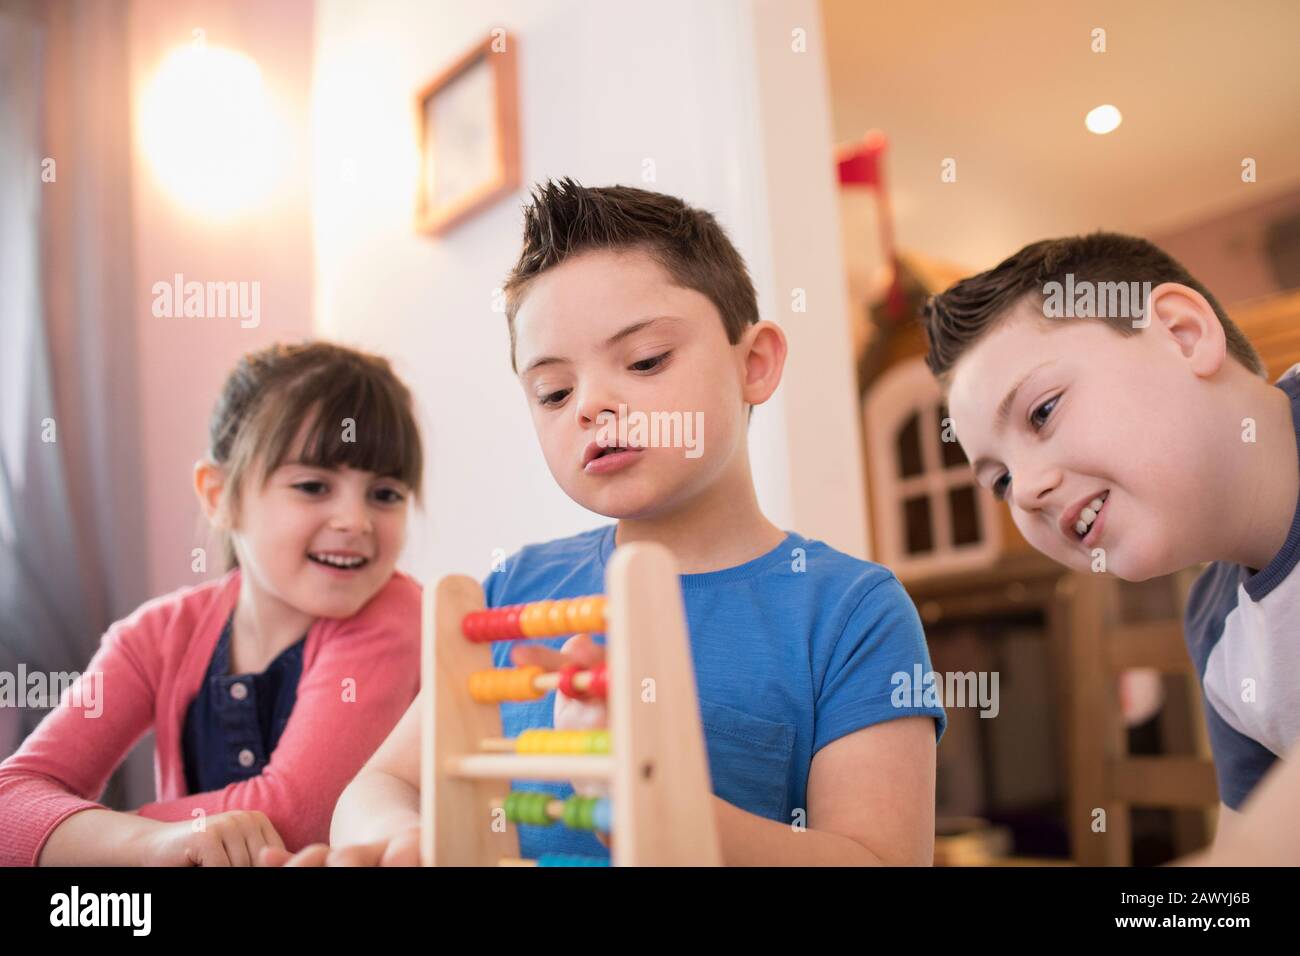 Garçon avec syndrome De Down et frères et sœurs jouant avec le jouet Banque D'Images